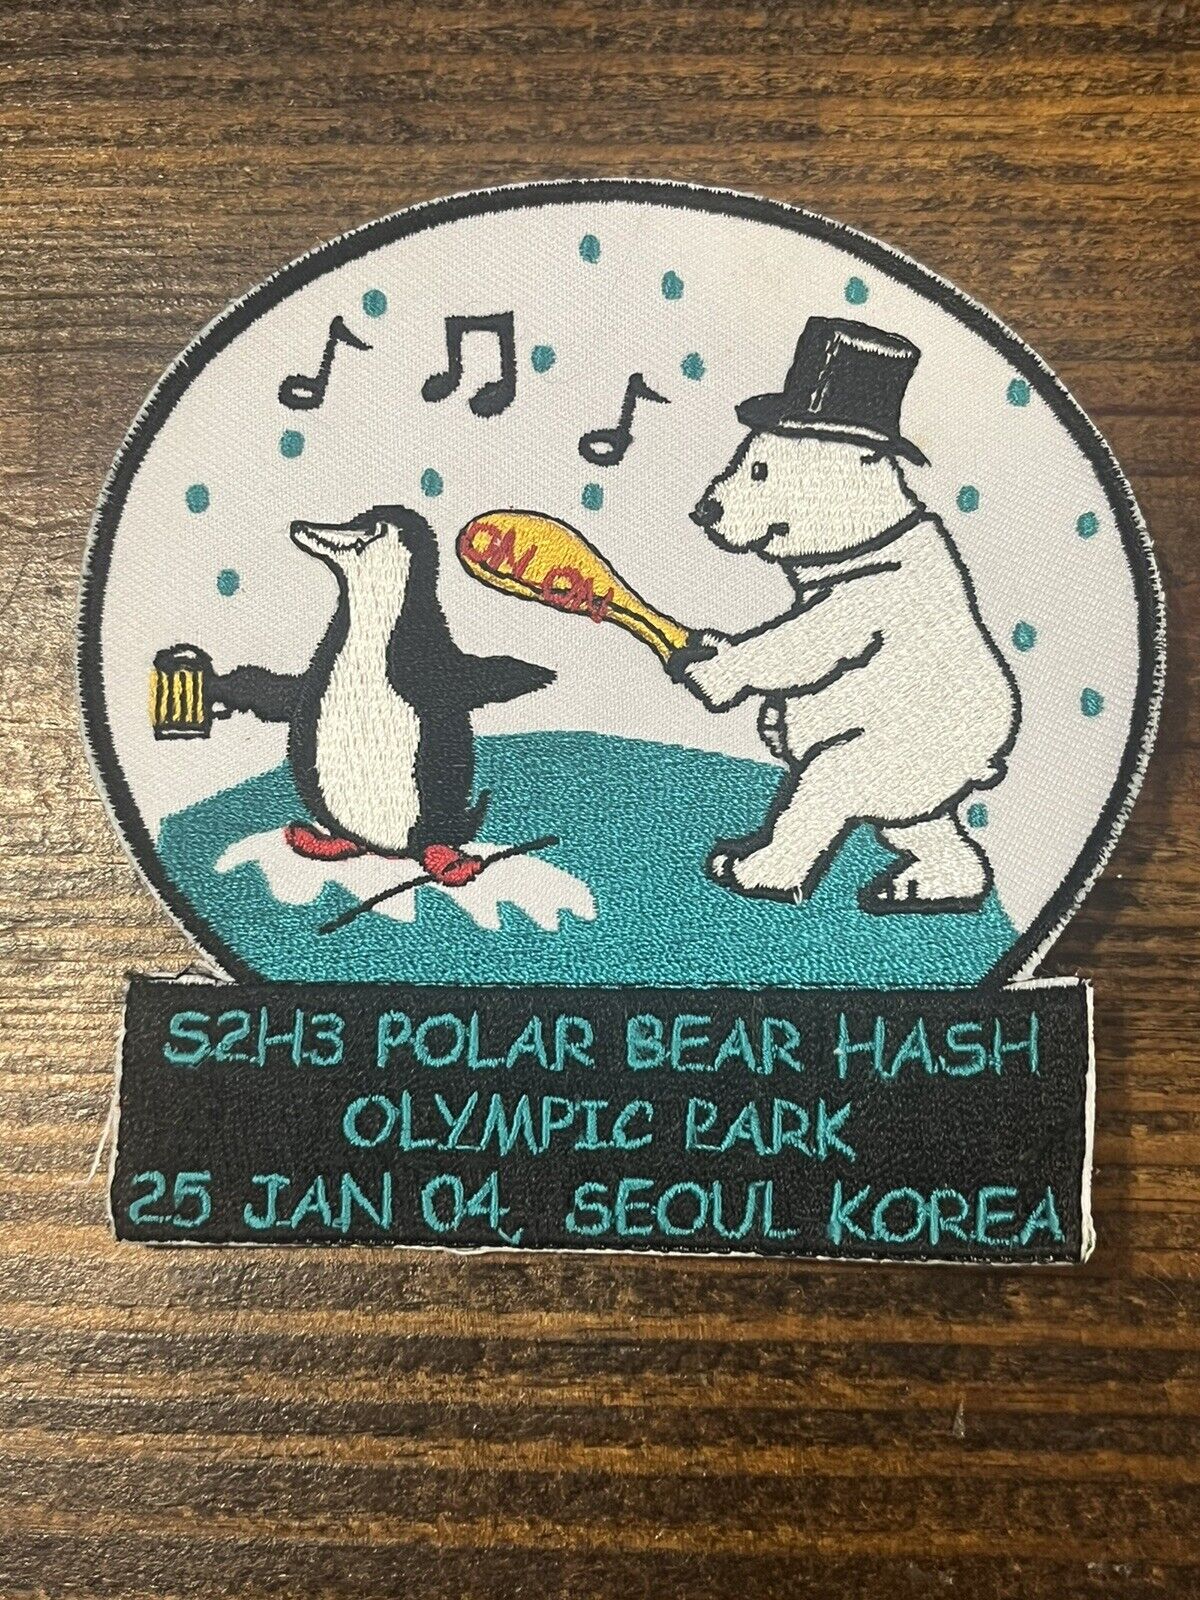 Polar Bear Hash Seoul Korea 2004 Patch Olympic Park 